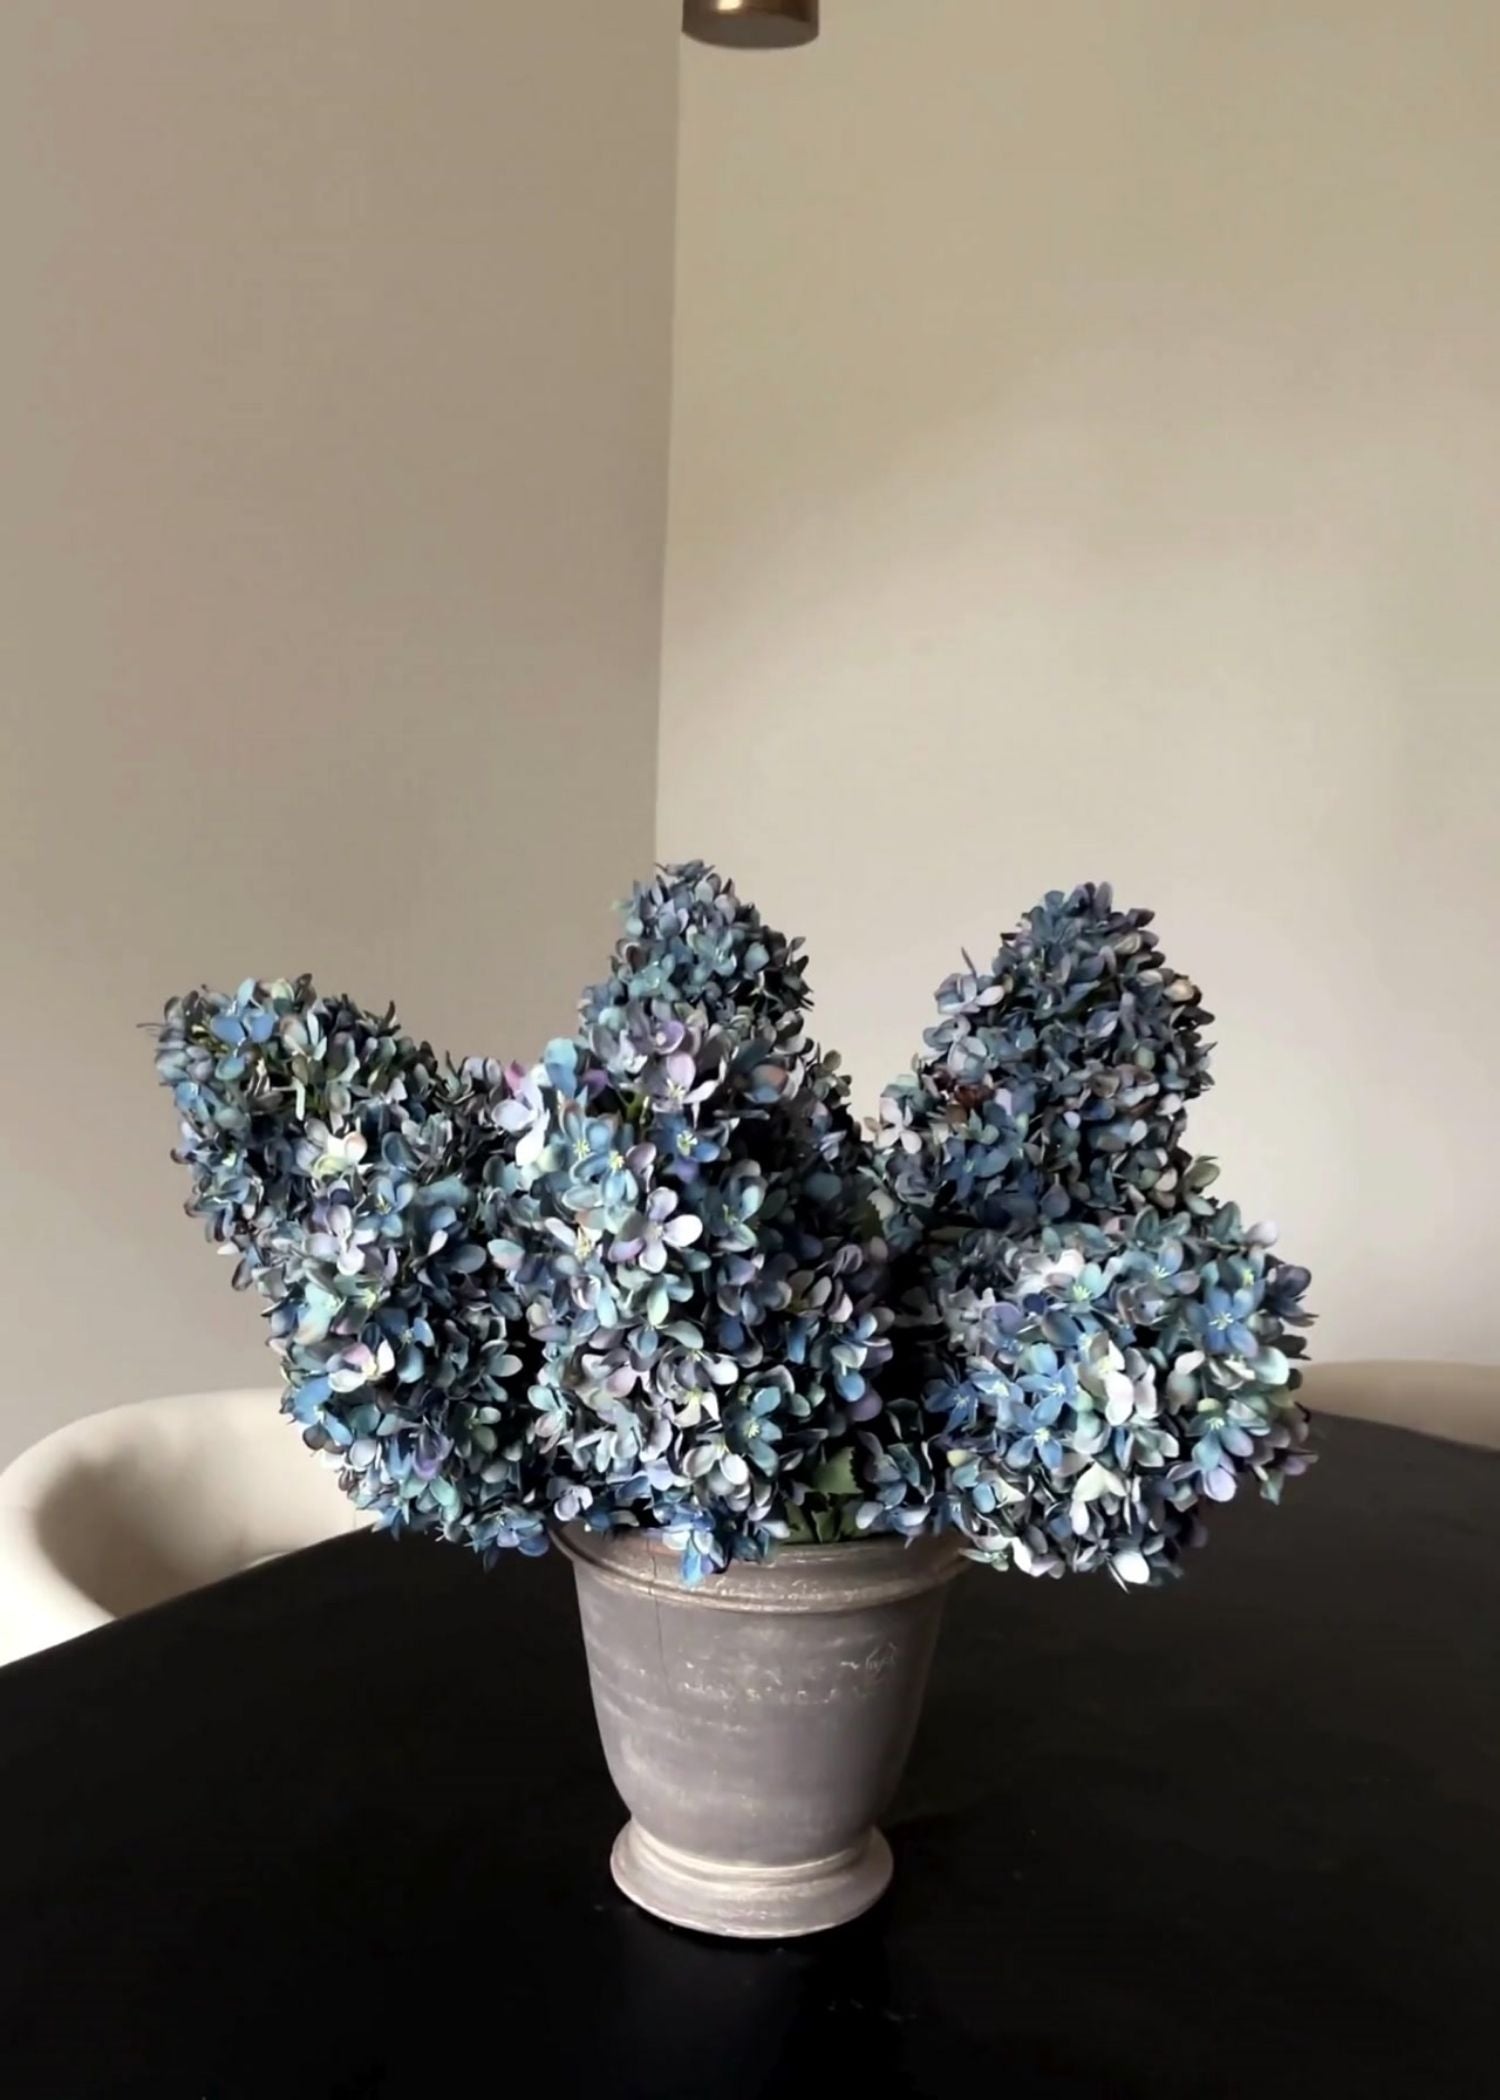 Blue Hydrangea Styled in an Arrangement